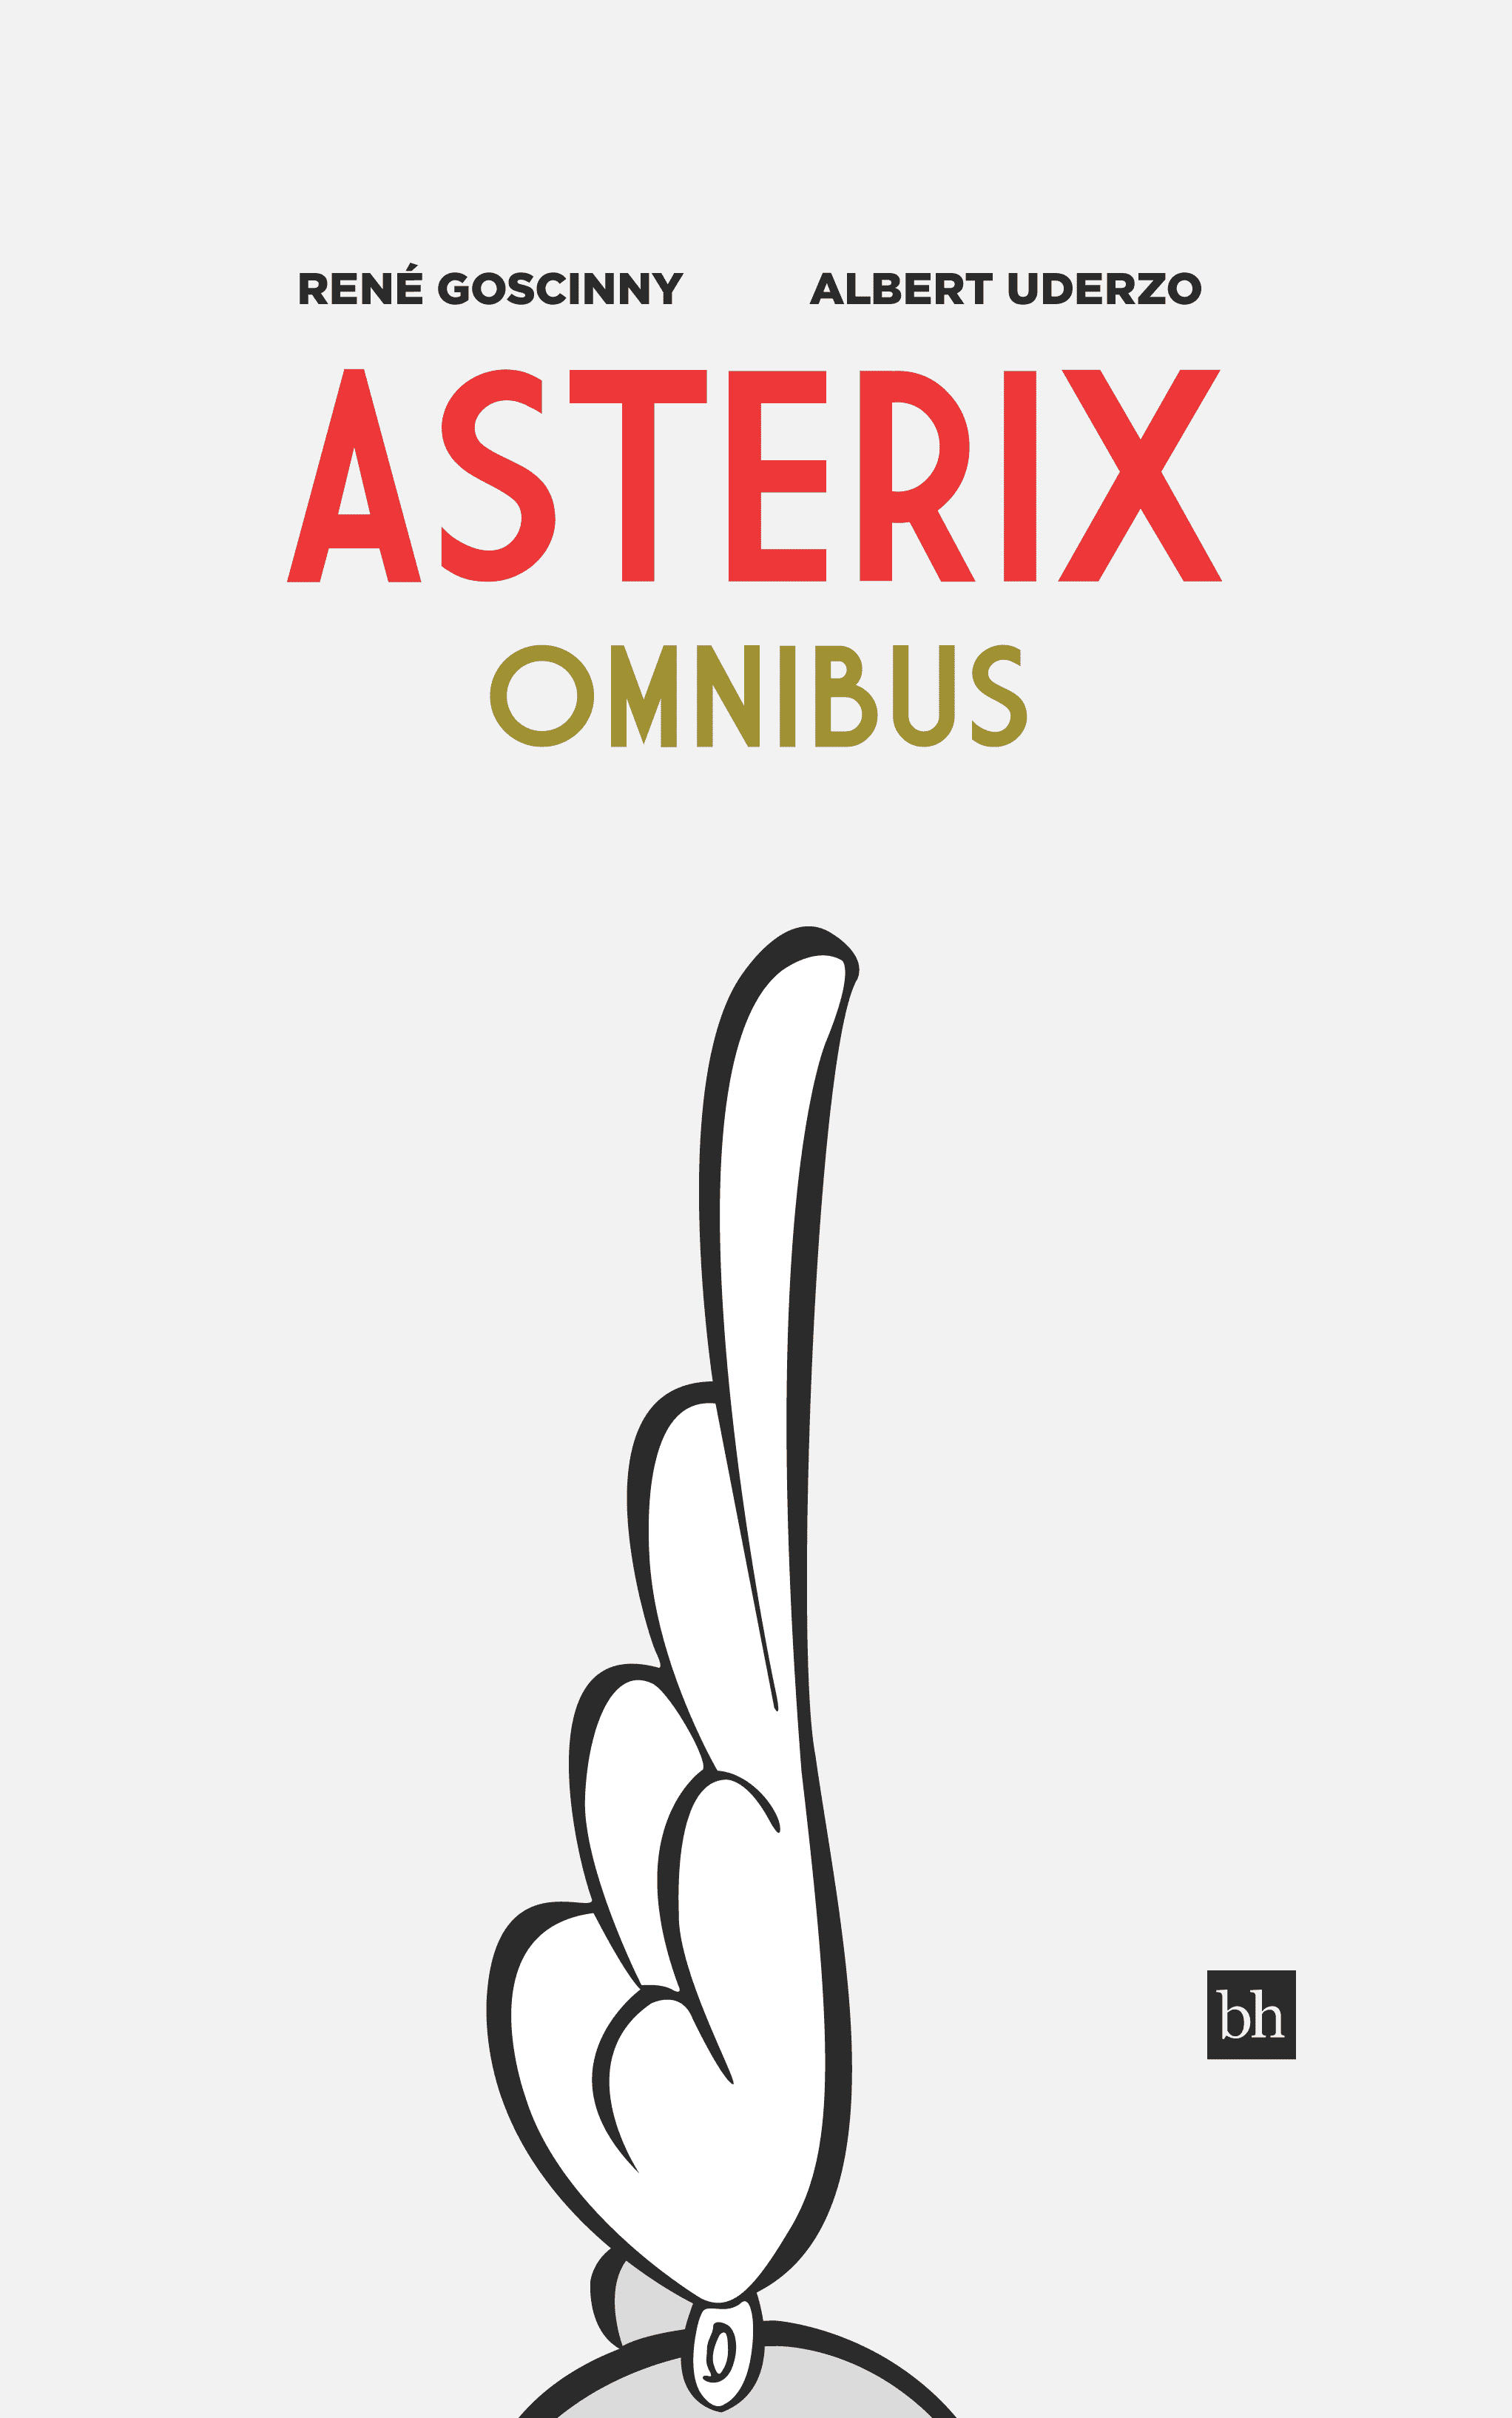 Asterix Omnibus by René Goscinny